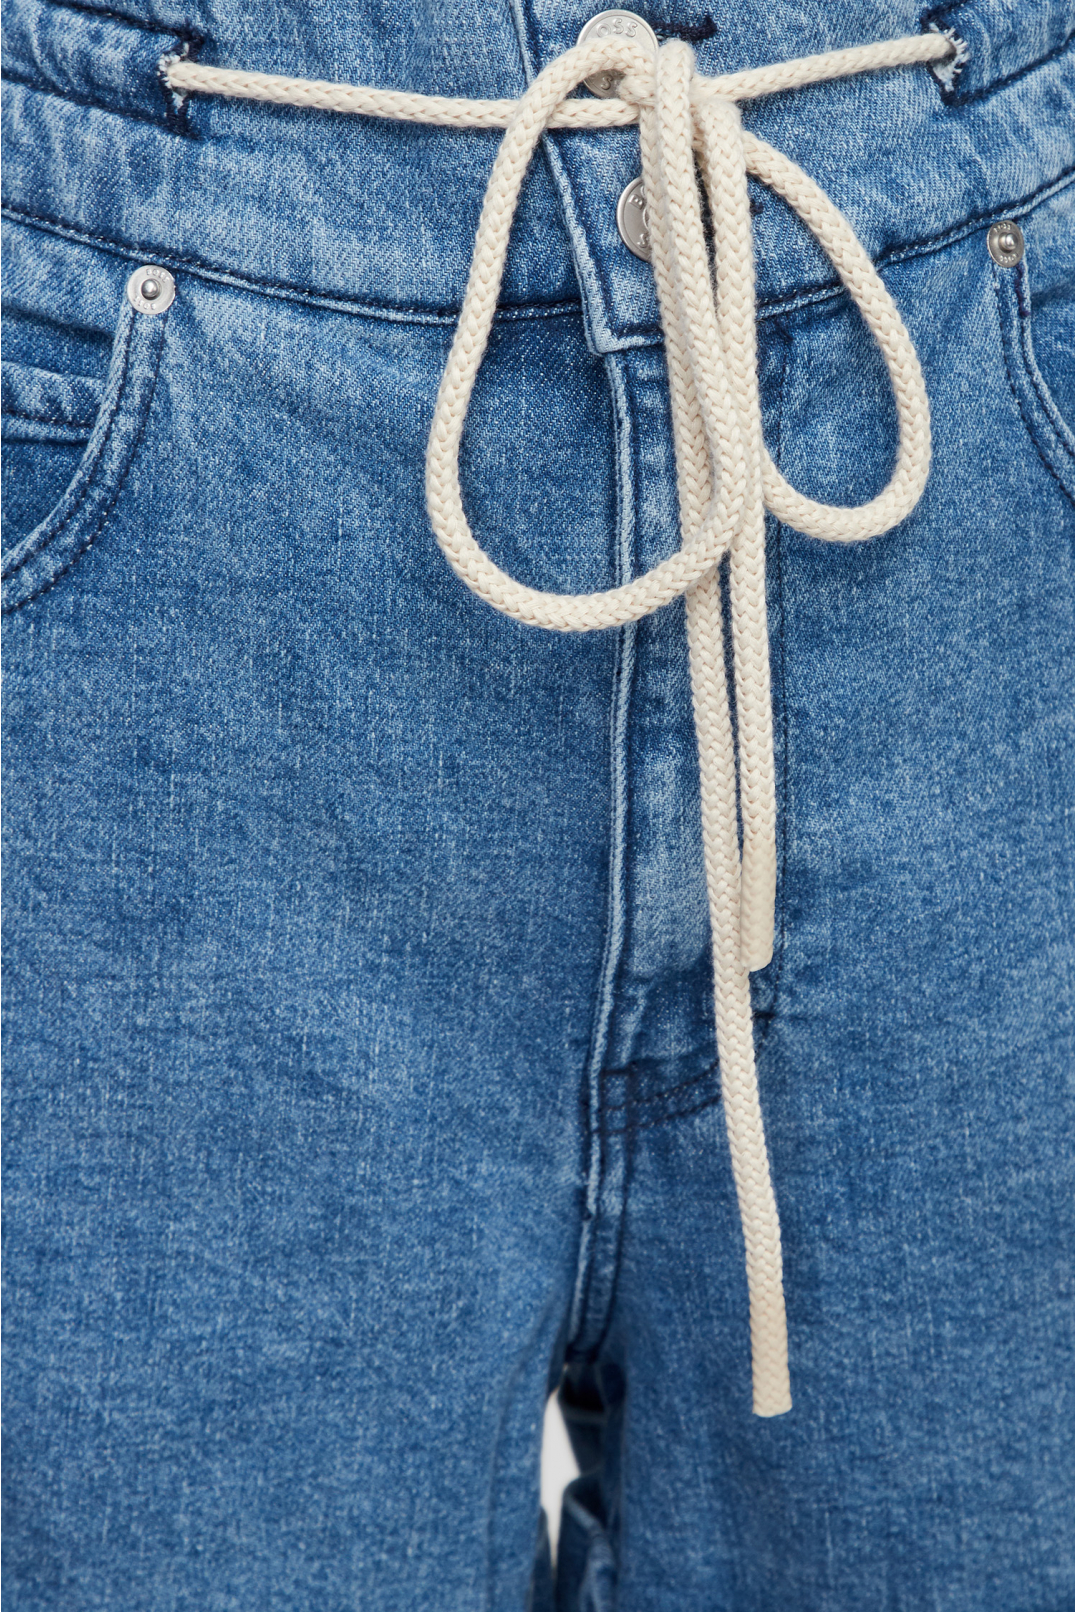 Женские синие джинсовые шорты - 3